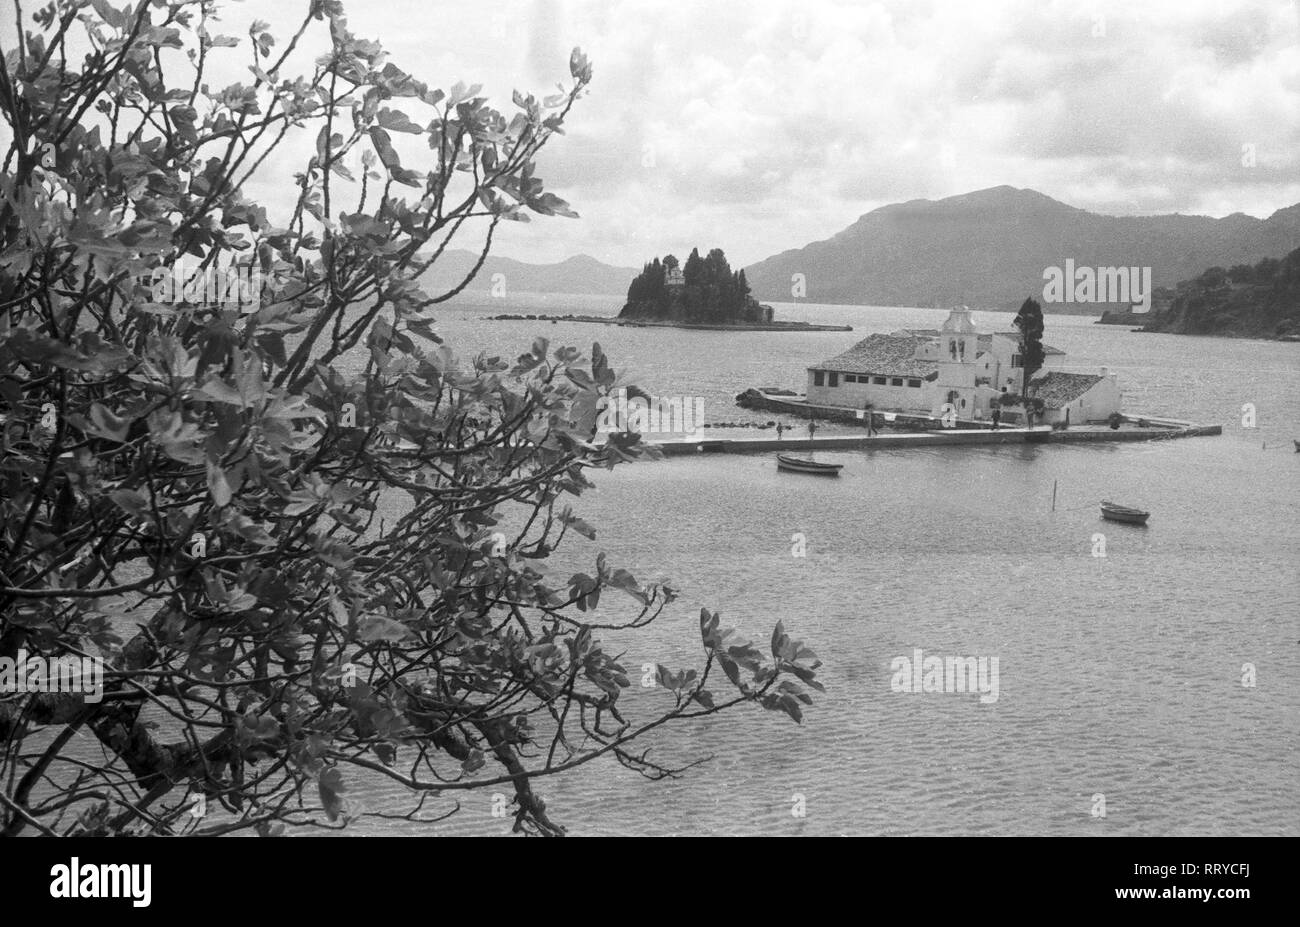 Griechenland, Greece - Zwei der Insel Korfu vorgelagerte Inseln mit Wohnbauten darauf, Griechenland, 1950er Jahre. Two islands in front of Korfu, with houses, Greece, 1950s. Stock Photo